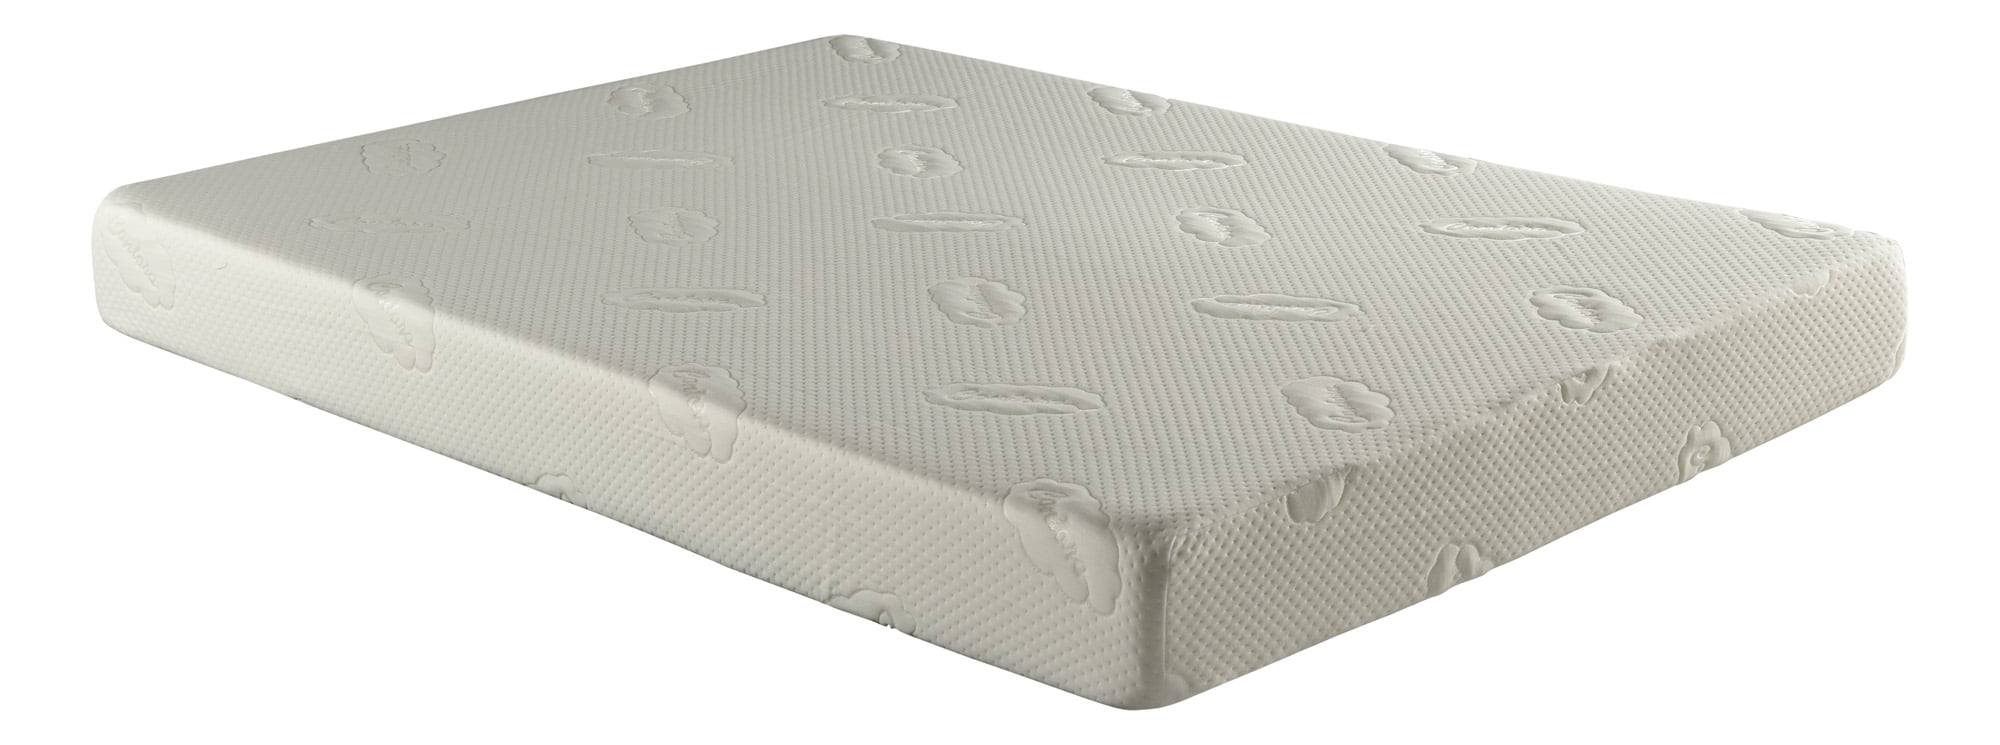 twin memory foam mattress at walmart